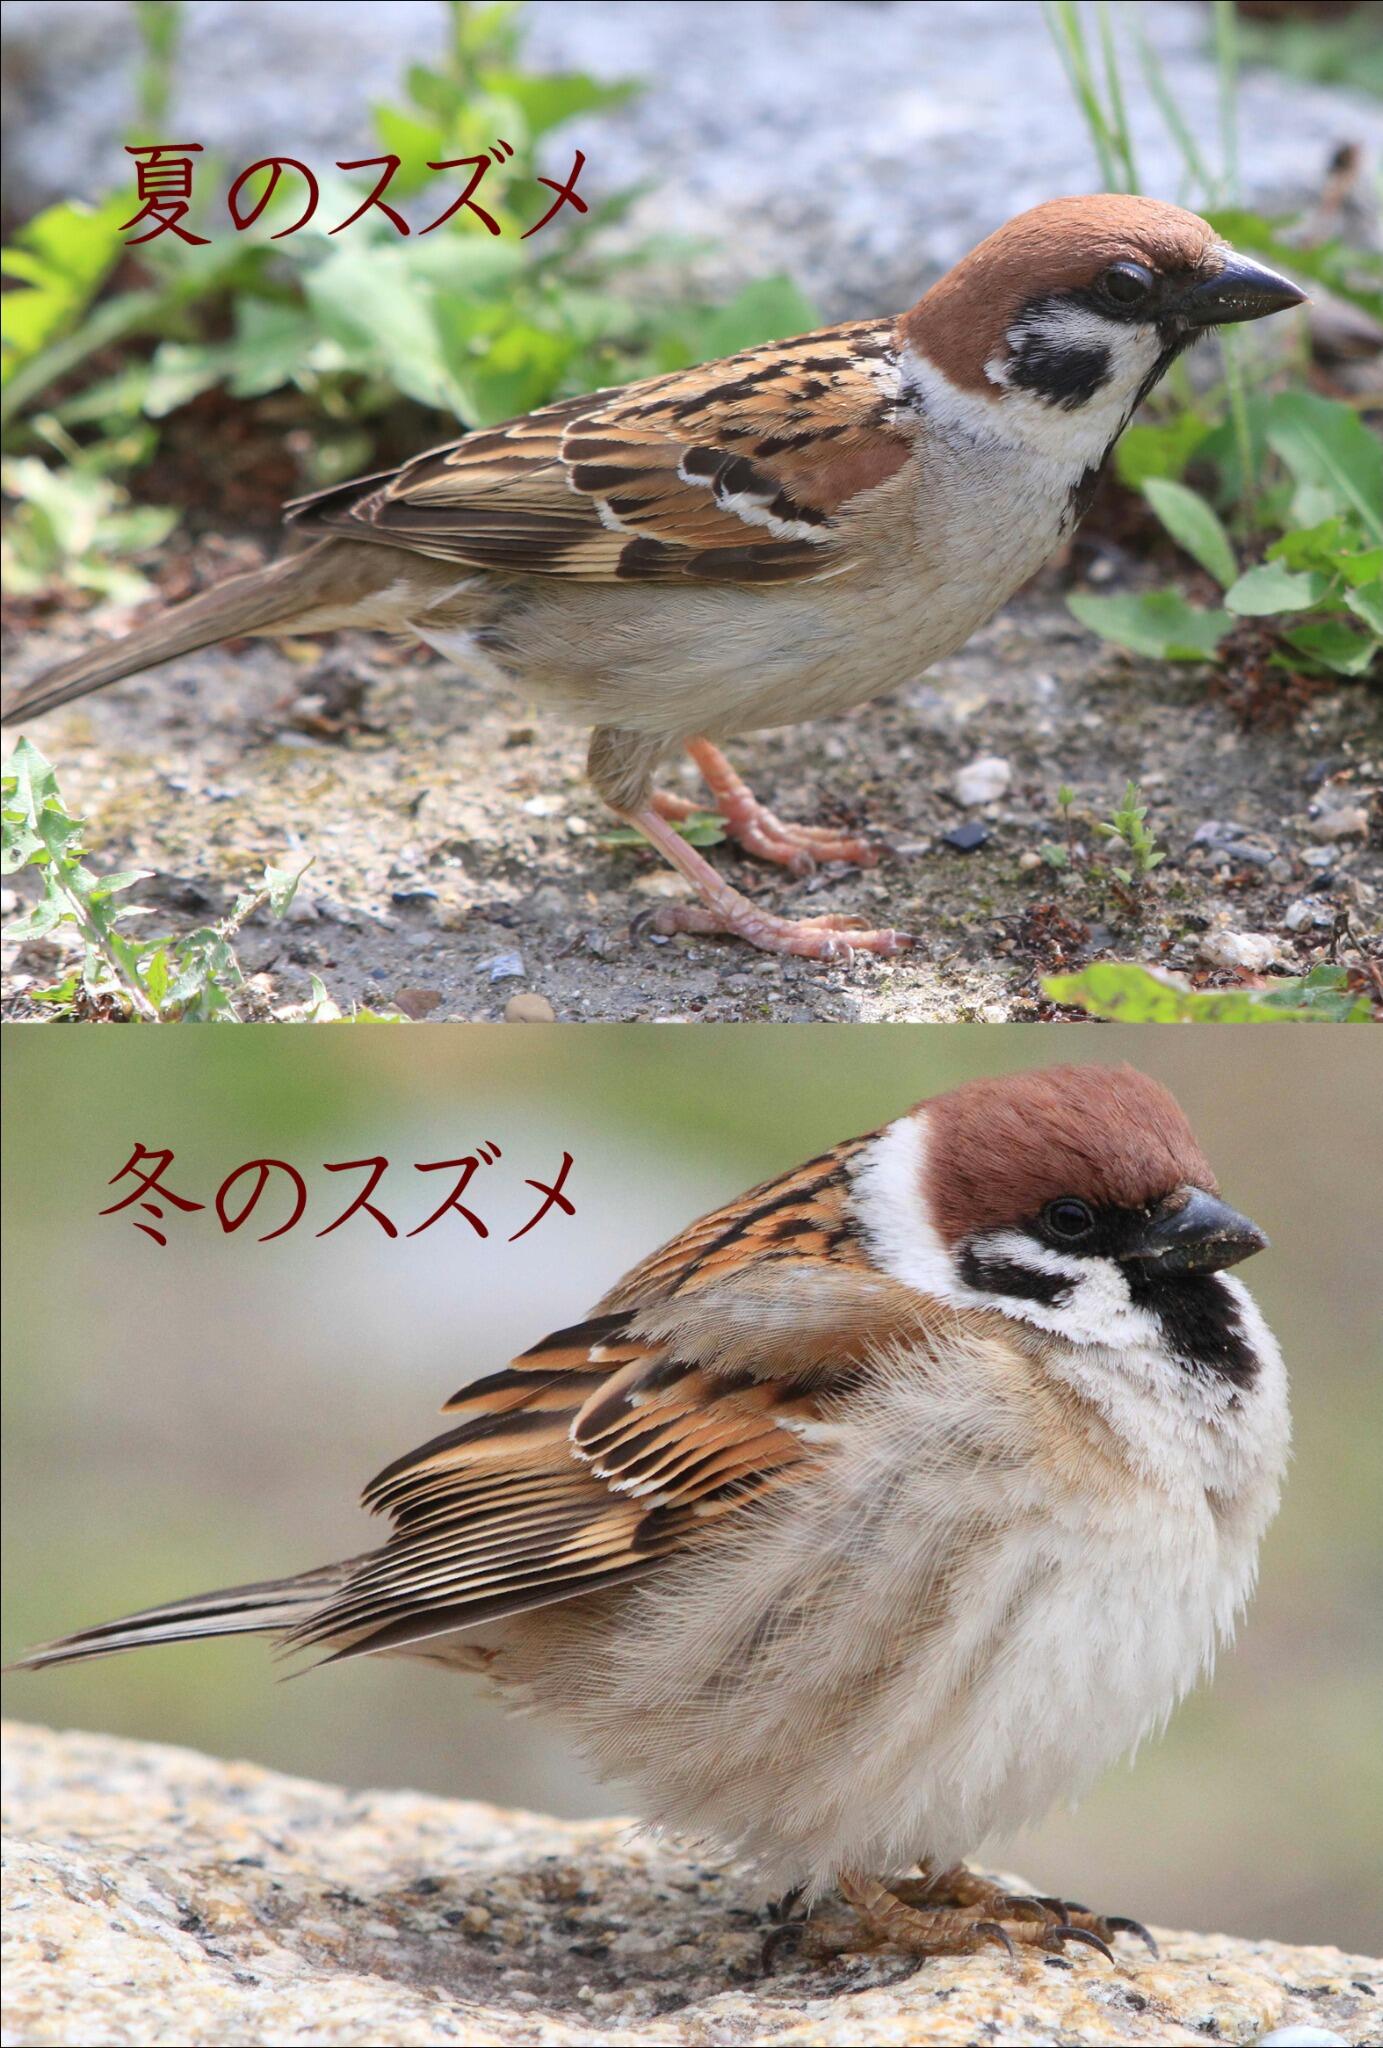 片柳弘史 夏のスズメと冬のスズメの写真を並べてみました 同じ鳥が 季節によってこれほどまでに姿を変えるとは まるで別人 別鳥 のようです Http T Co Ialahnixmi